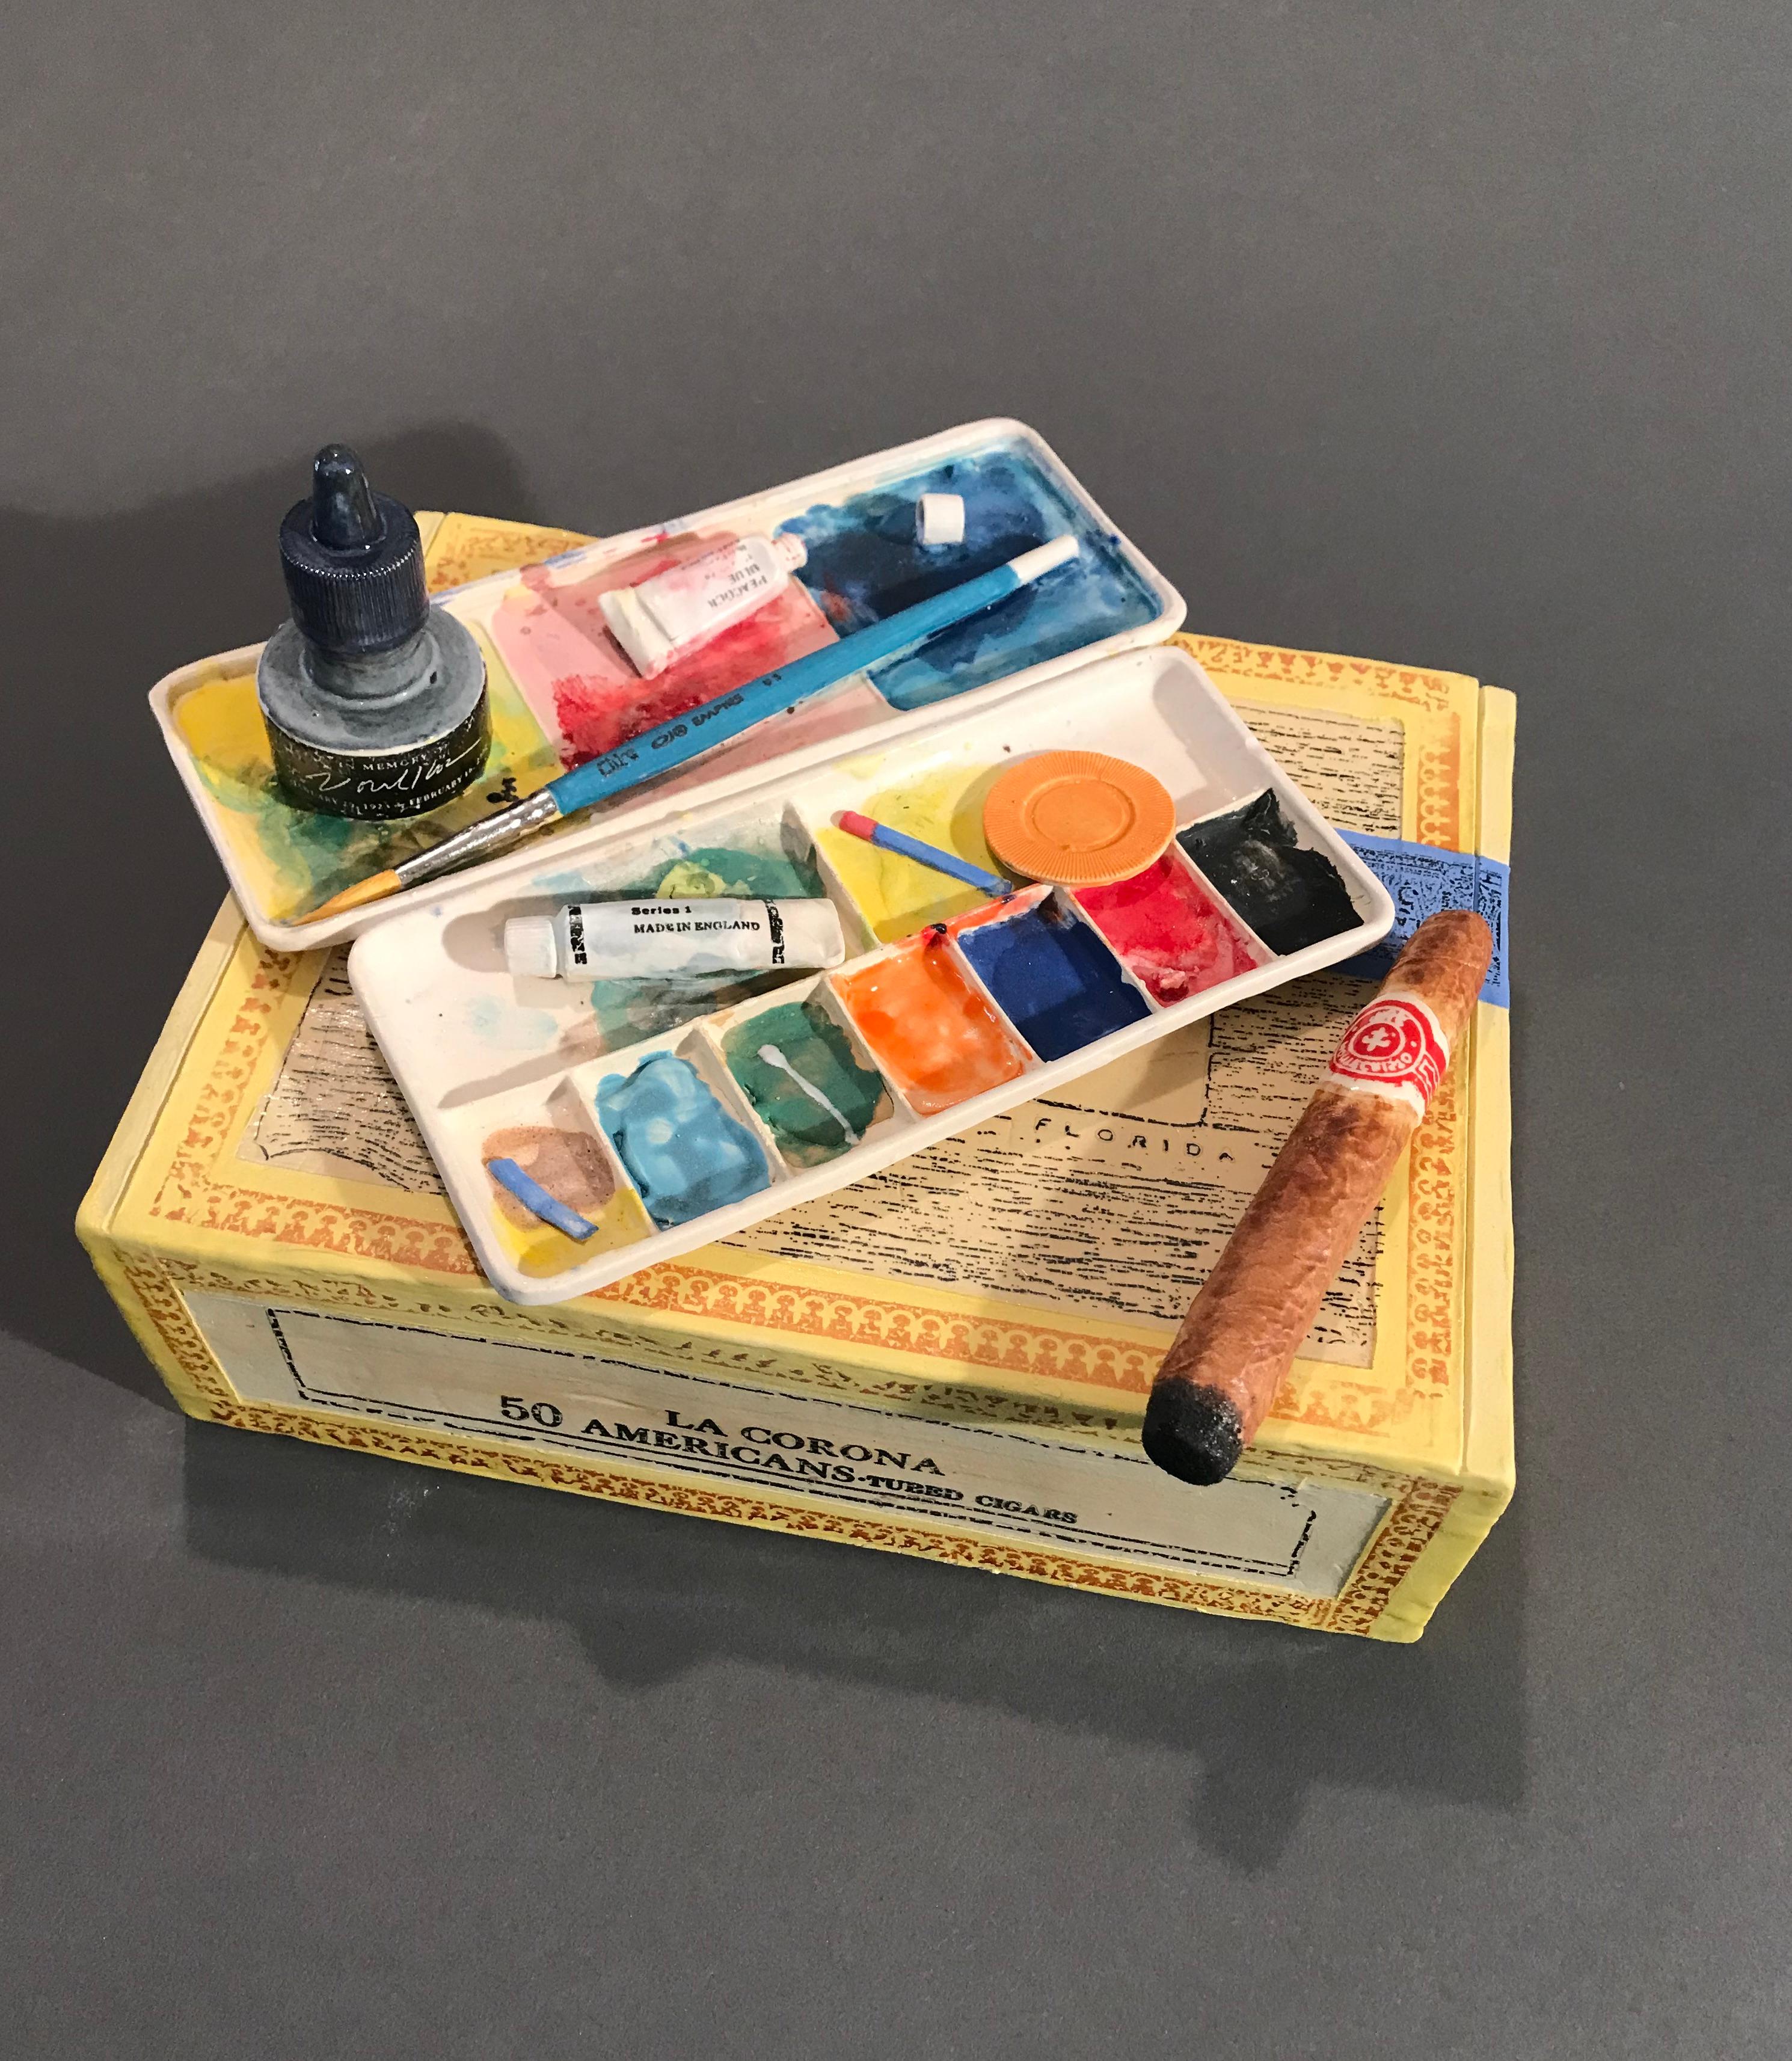 Richard Shaw Still-Life Sculpture - Corona Cigar Box with Watercolor Tray and Cold Cigar